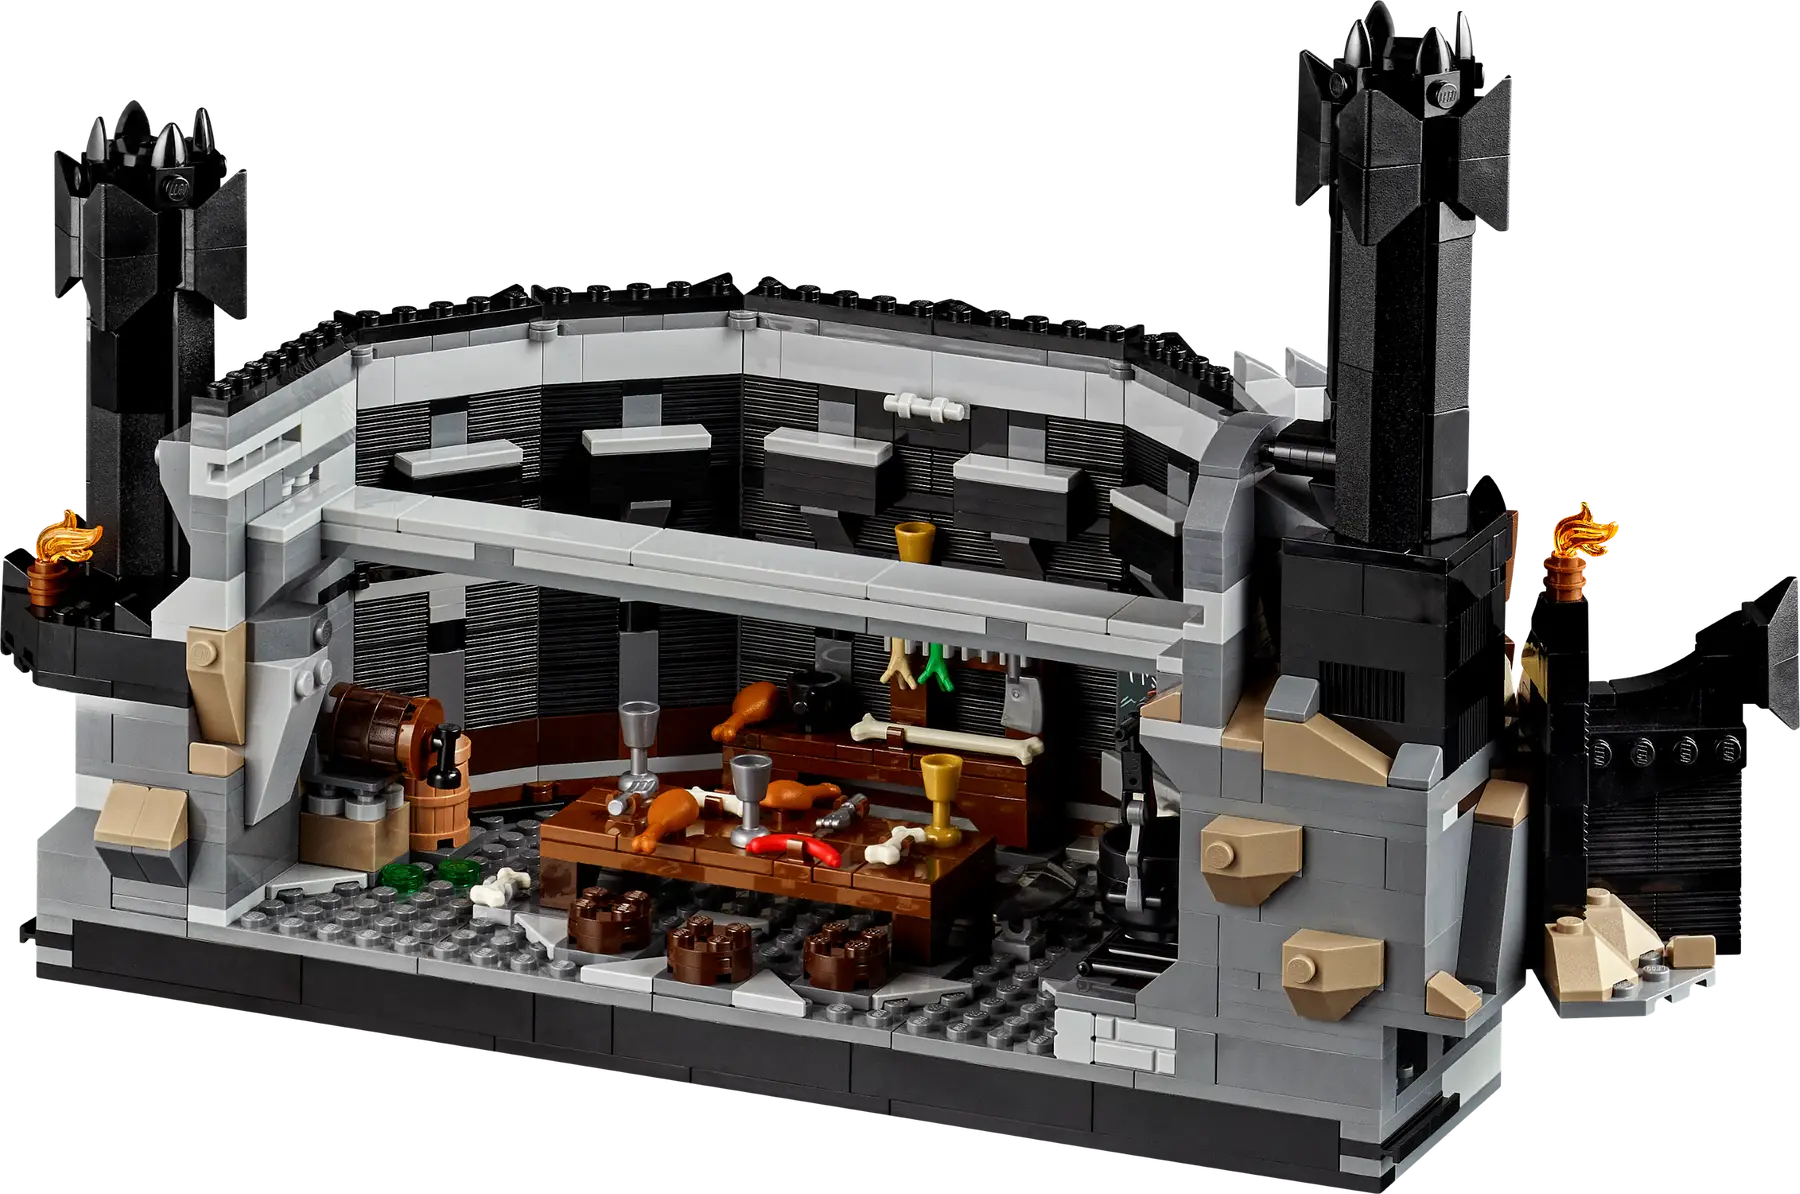 Conoce los detalles del set LEGO El Señor de los Anillos: Barad-dûr, disponible a partir del 4 de junio 17